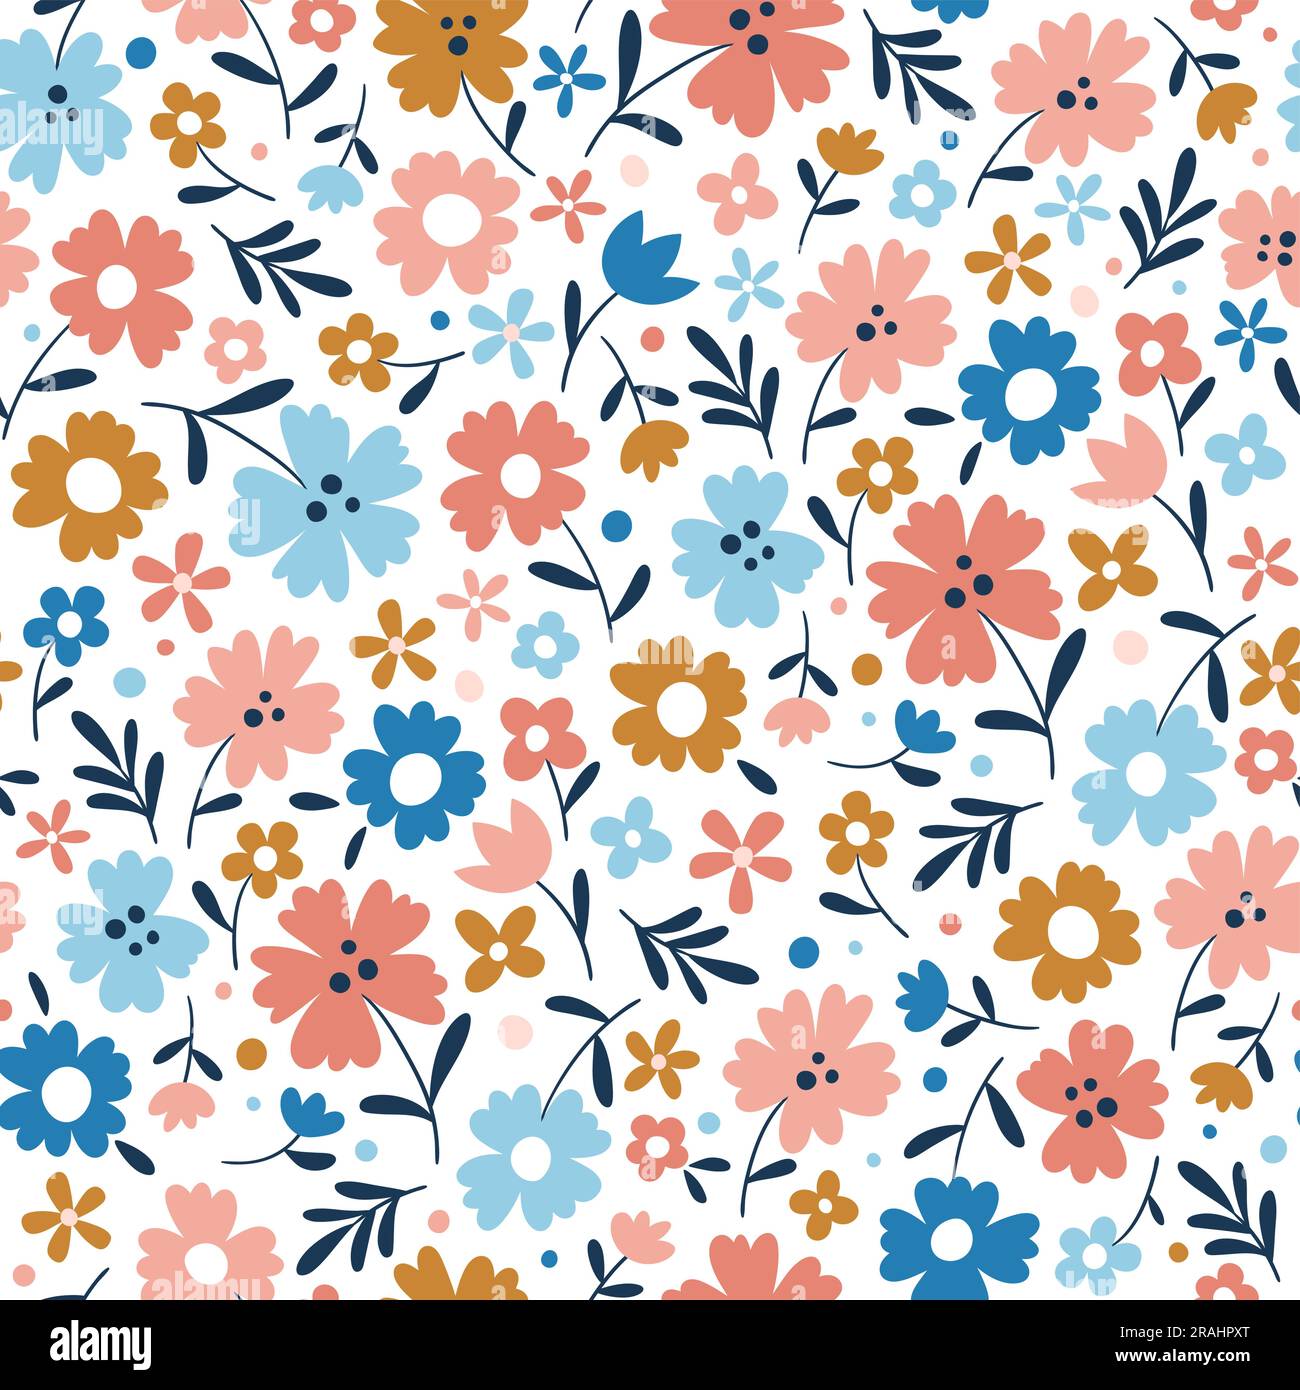 Saisonale Blumen mit nahtlosem Muster. Wiederhole das Muster mit schönen Blumen auf weißem Hintergrund. Quadratisches Design. Vektordarstellung. Stock Vektor